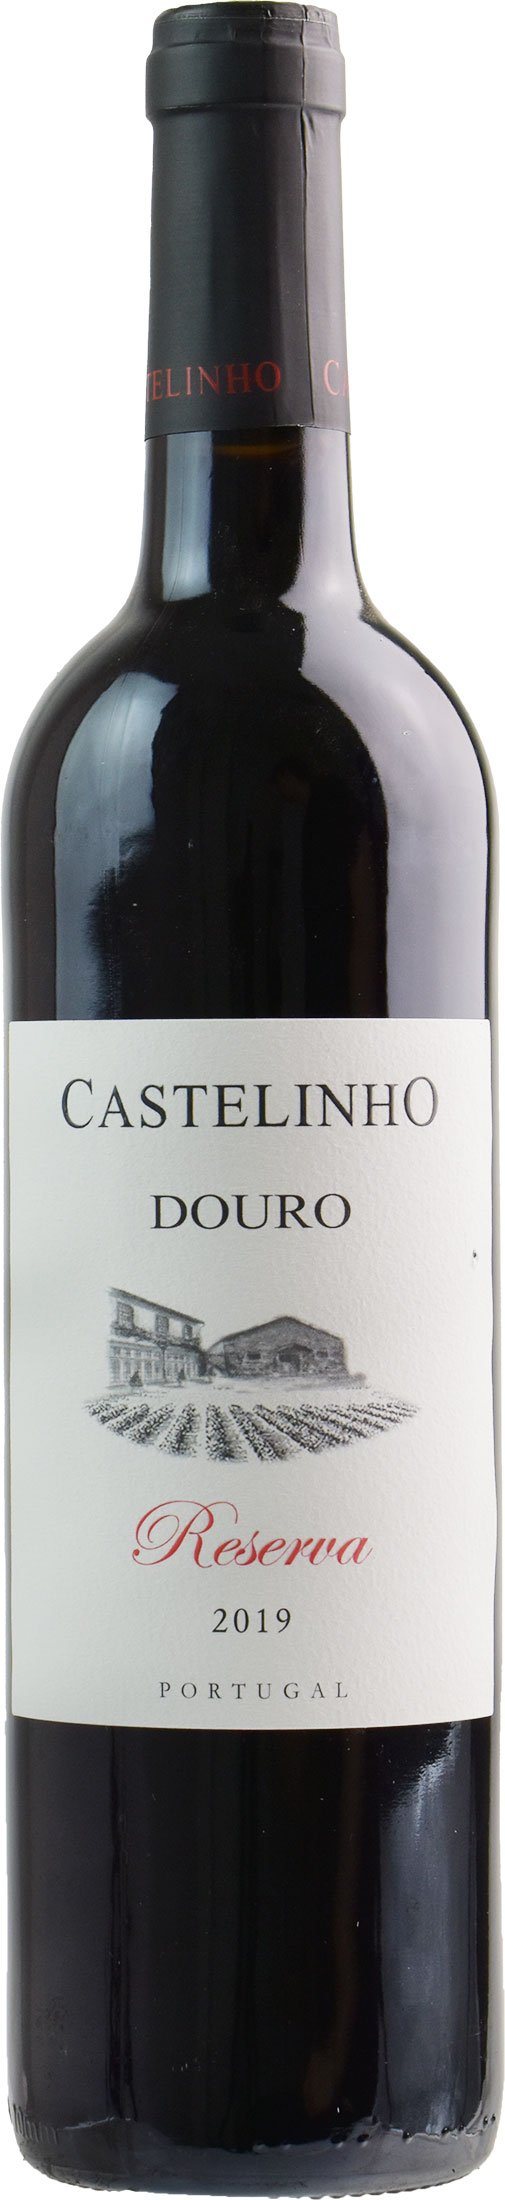 Castelinho Douro Reserva